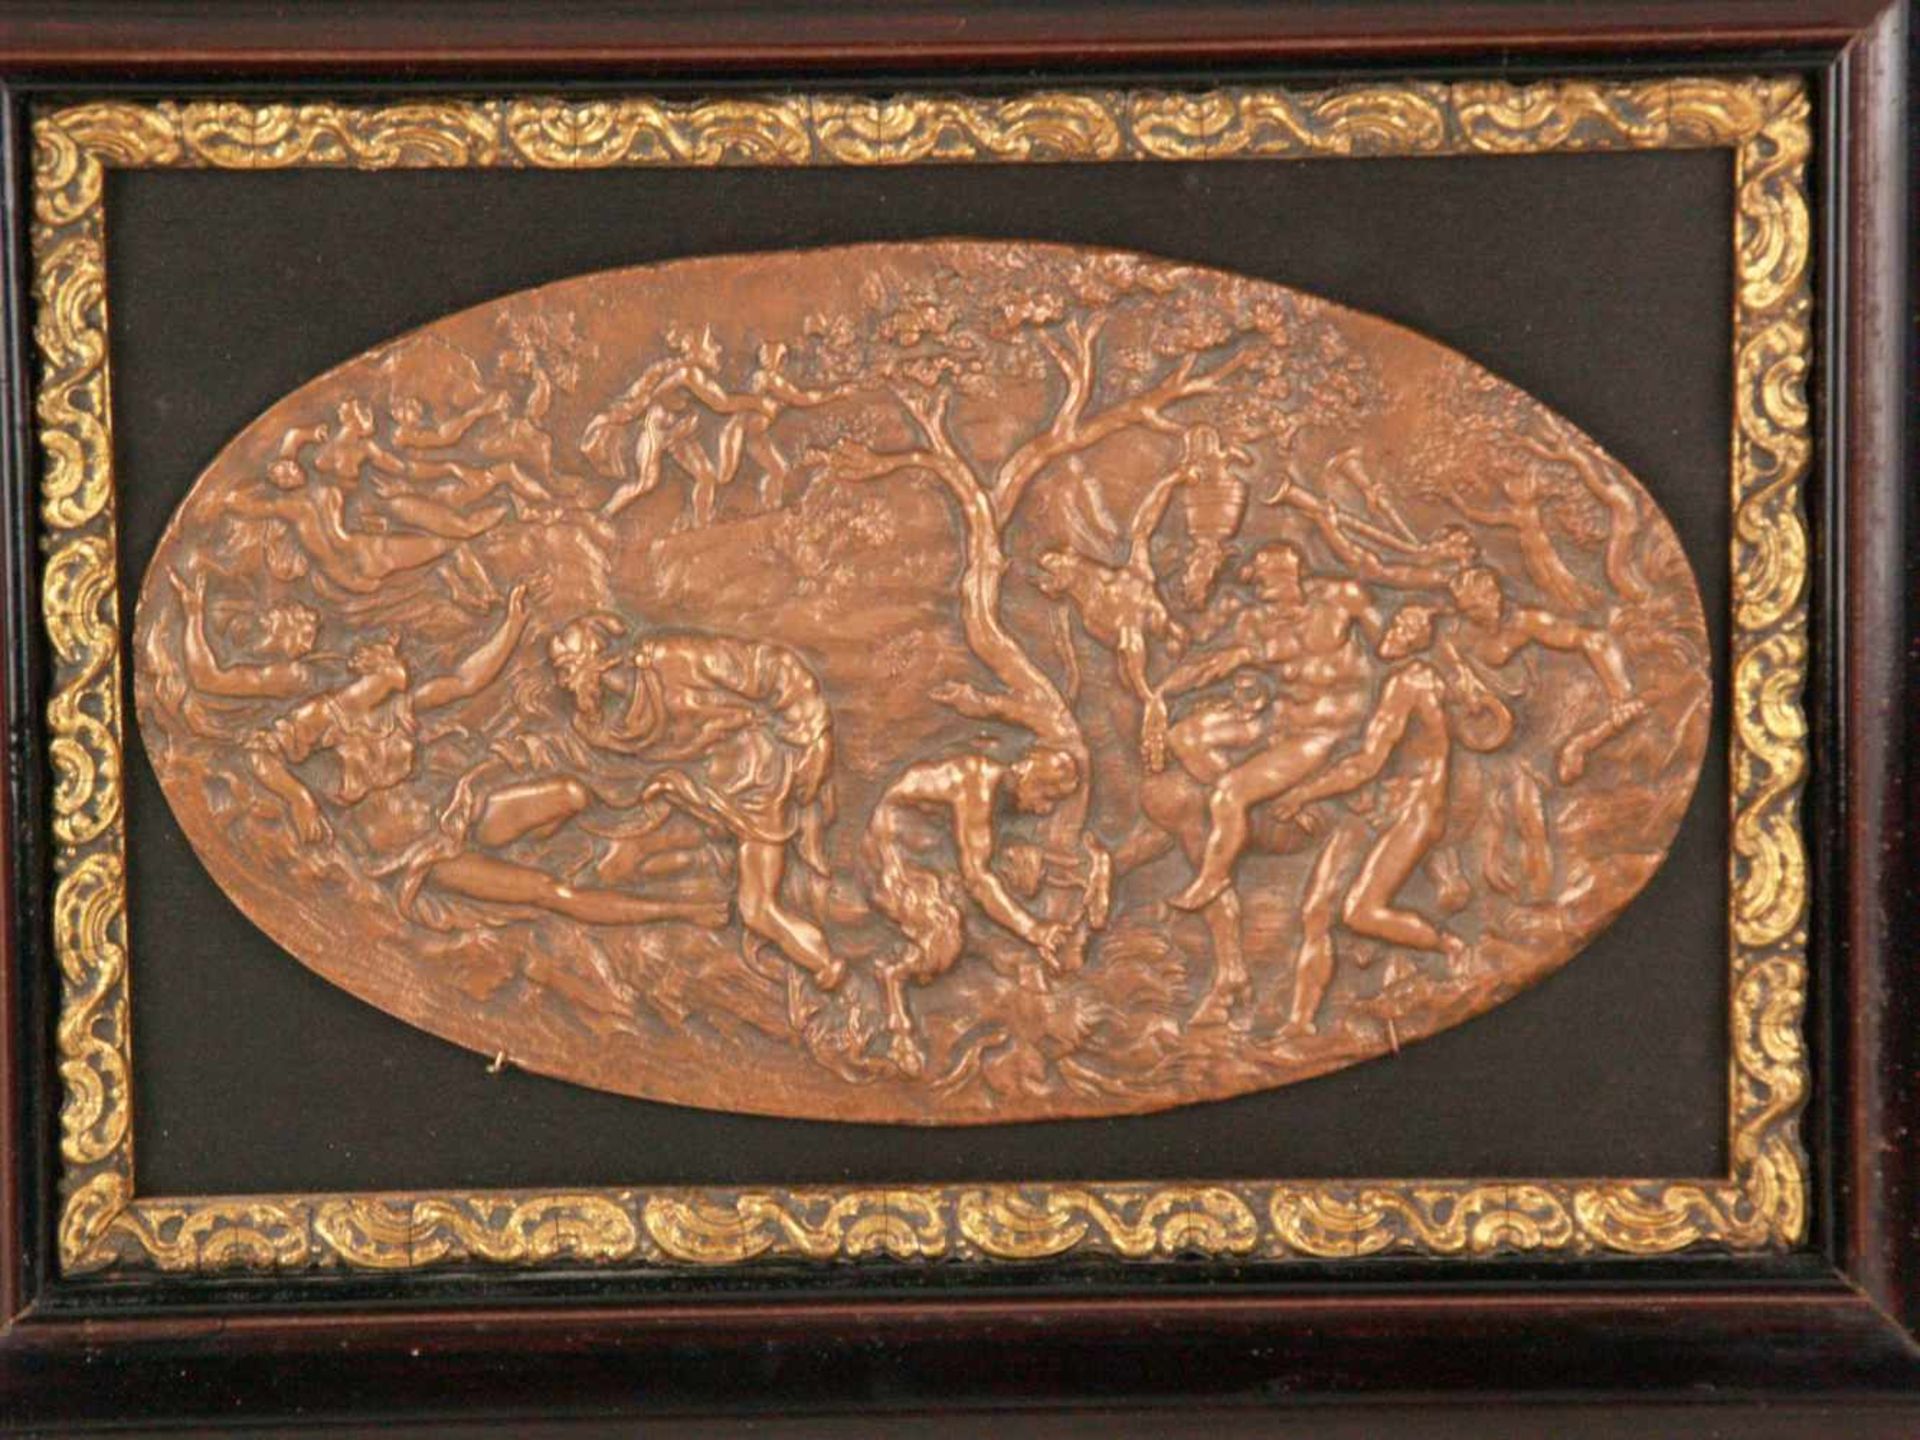 Ovale Reliefplakette "Bacchanal" - Kupfer bzw. Kupferbronze,aus mehreren Einzelszenen komponiertes - Bild 2 aus 5